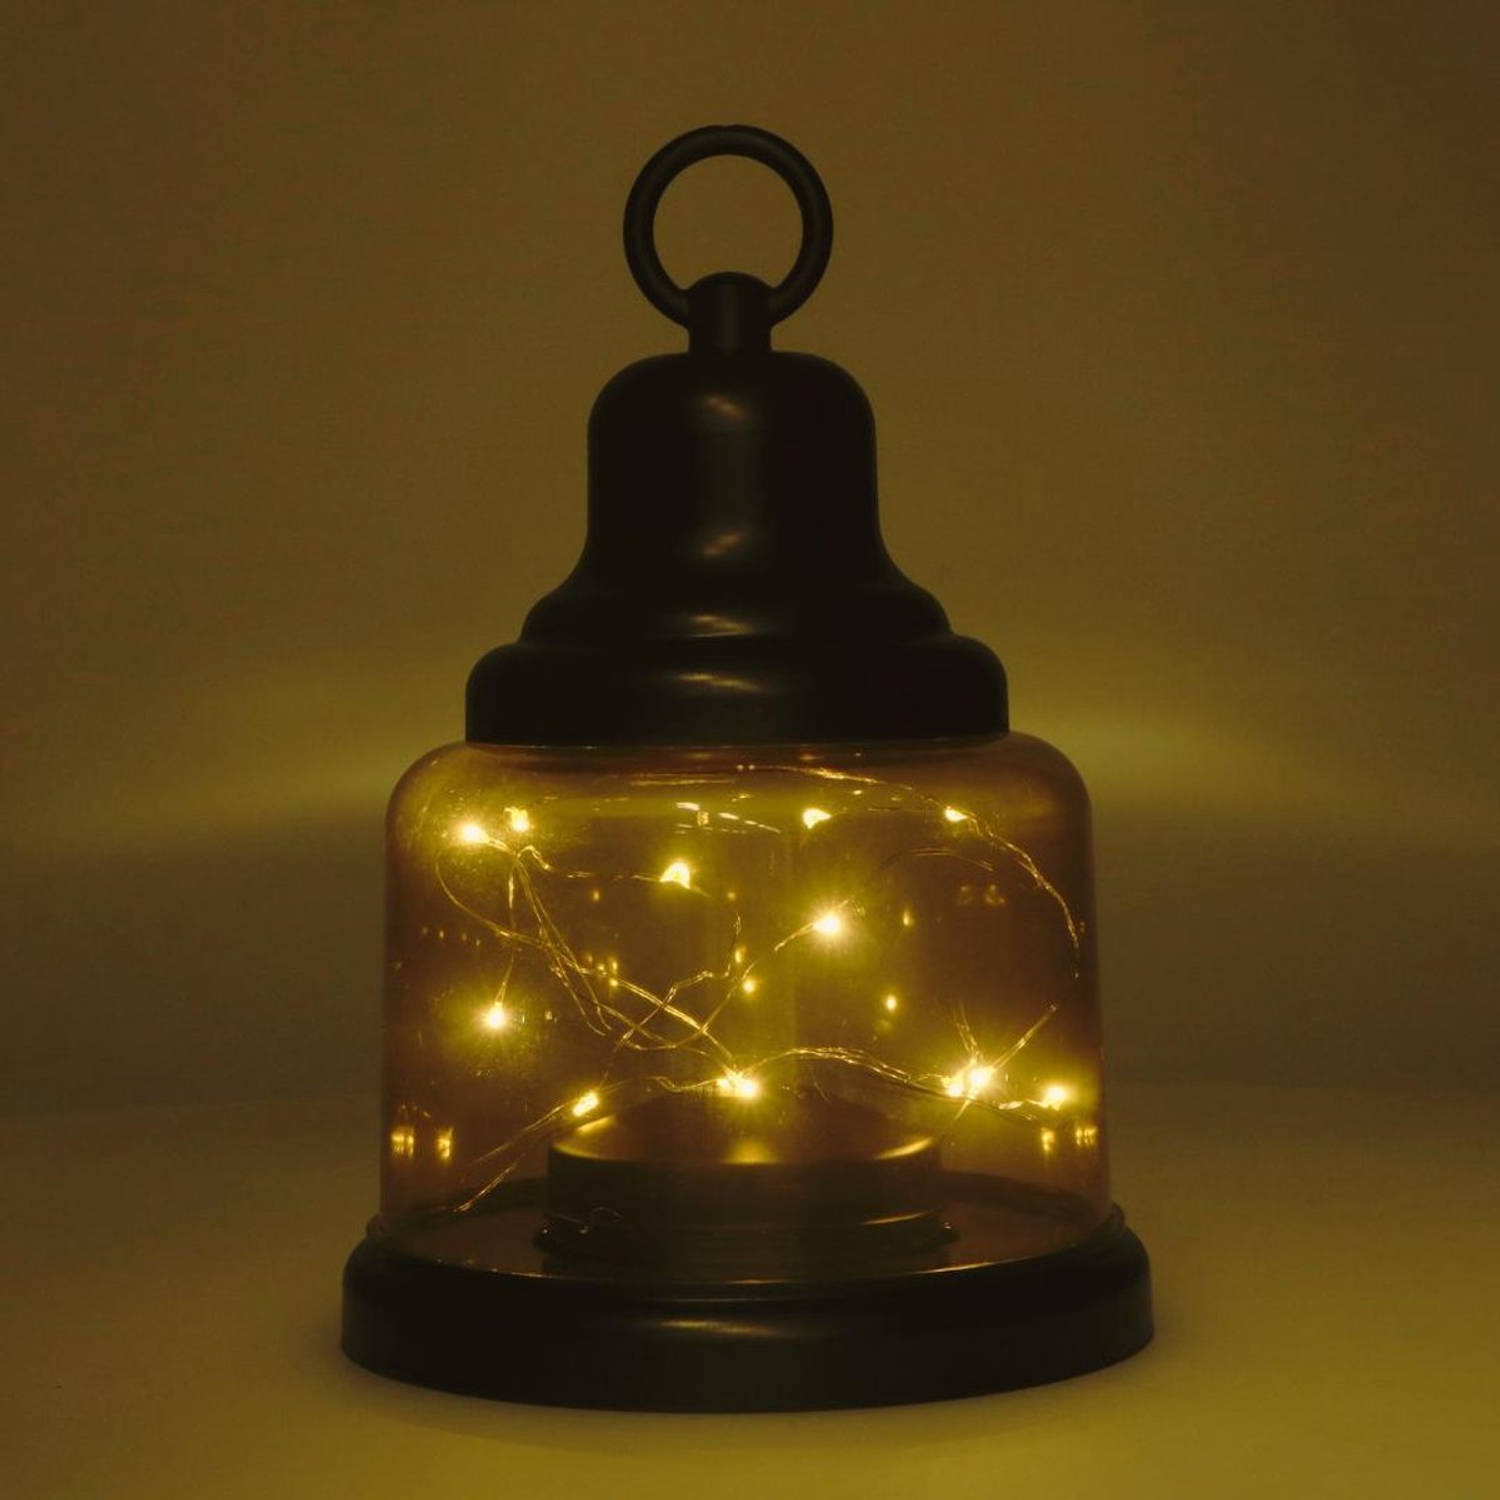 Proventa DECO LED lantaarn voor binnen op batterijen - LED tafellamp Model Amber